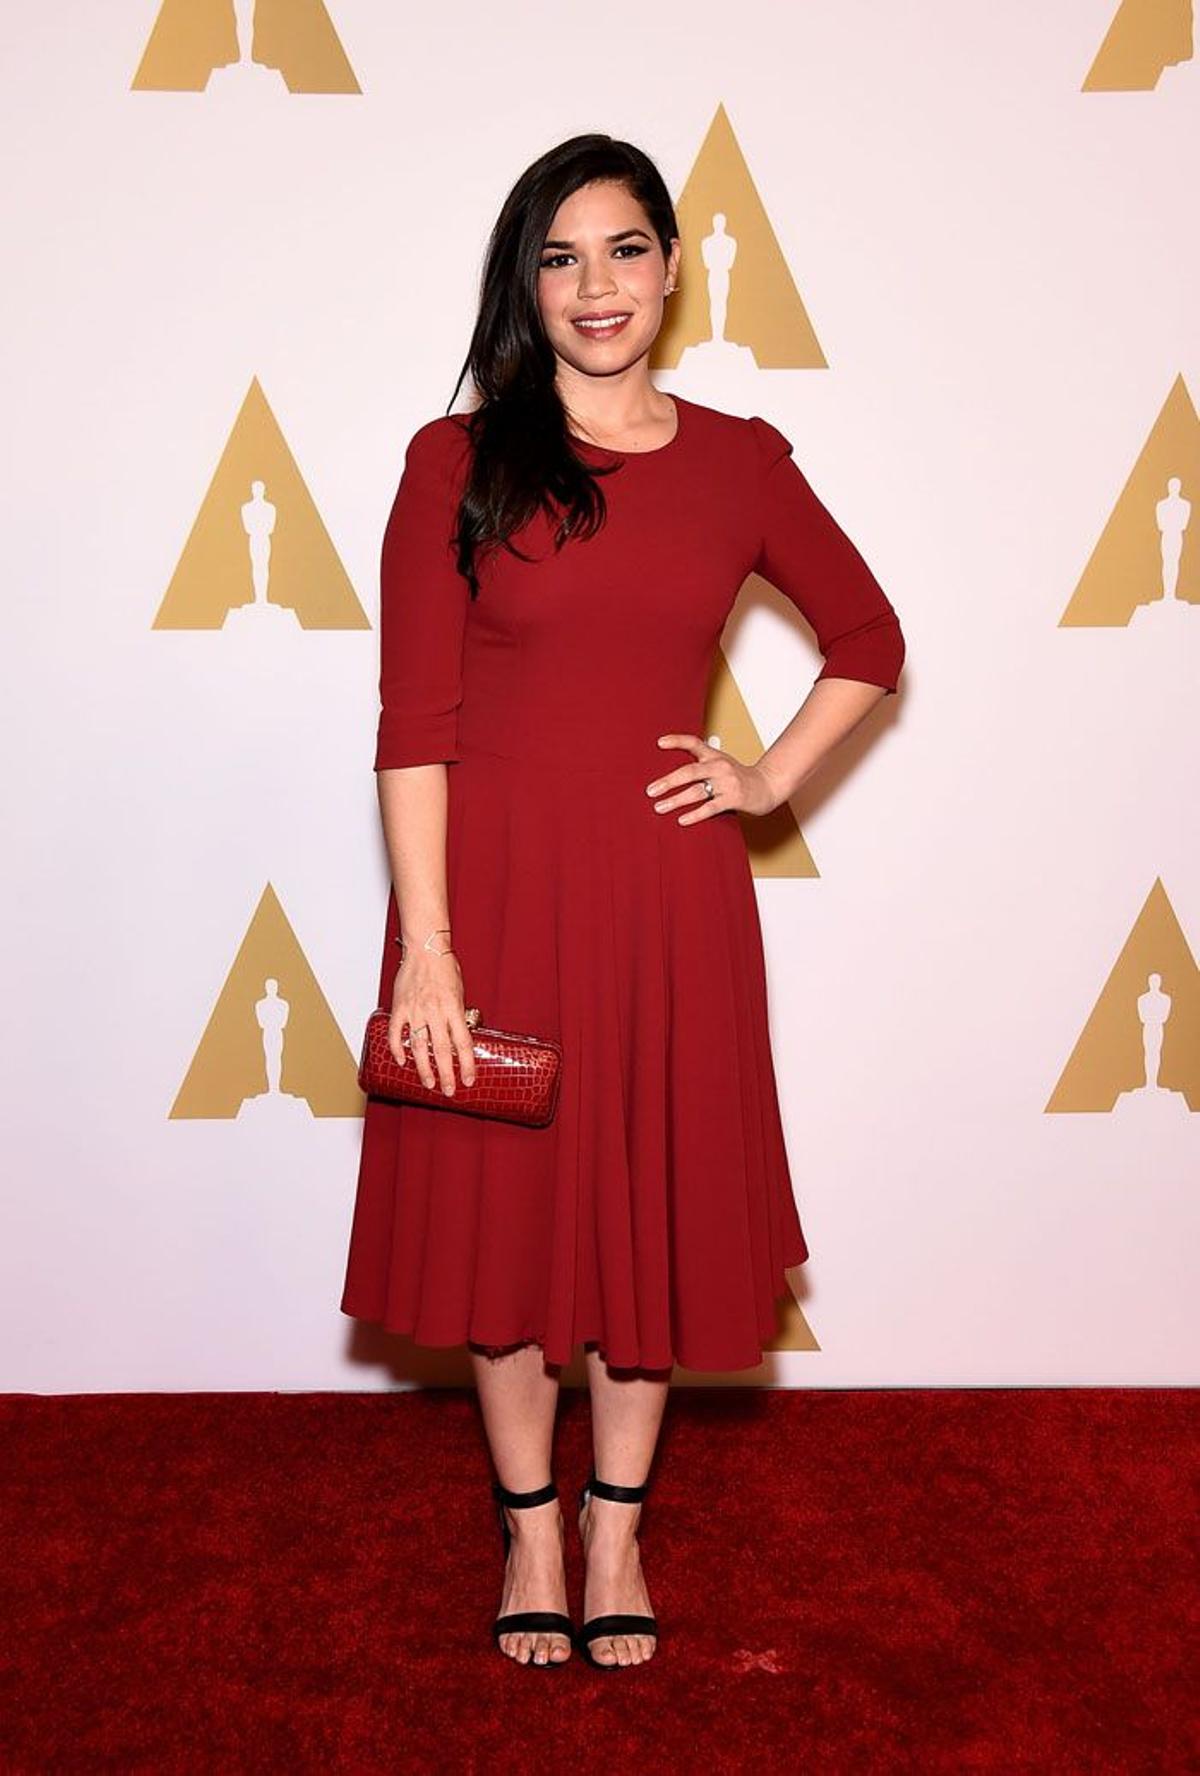 Almuerzo de los nominados Oscar 2015: America Ferrera